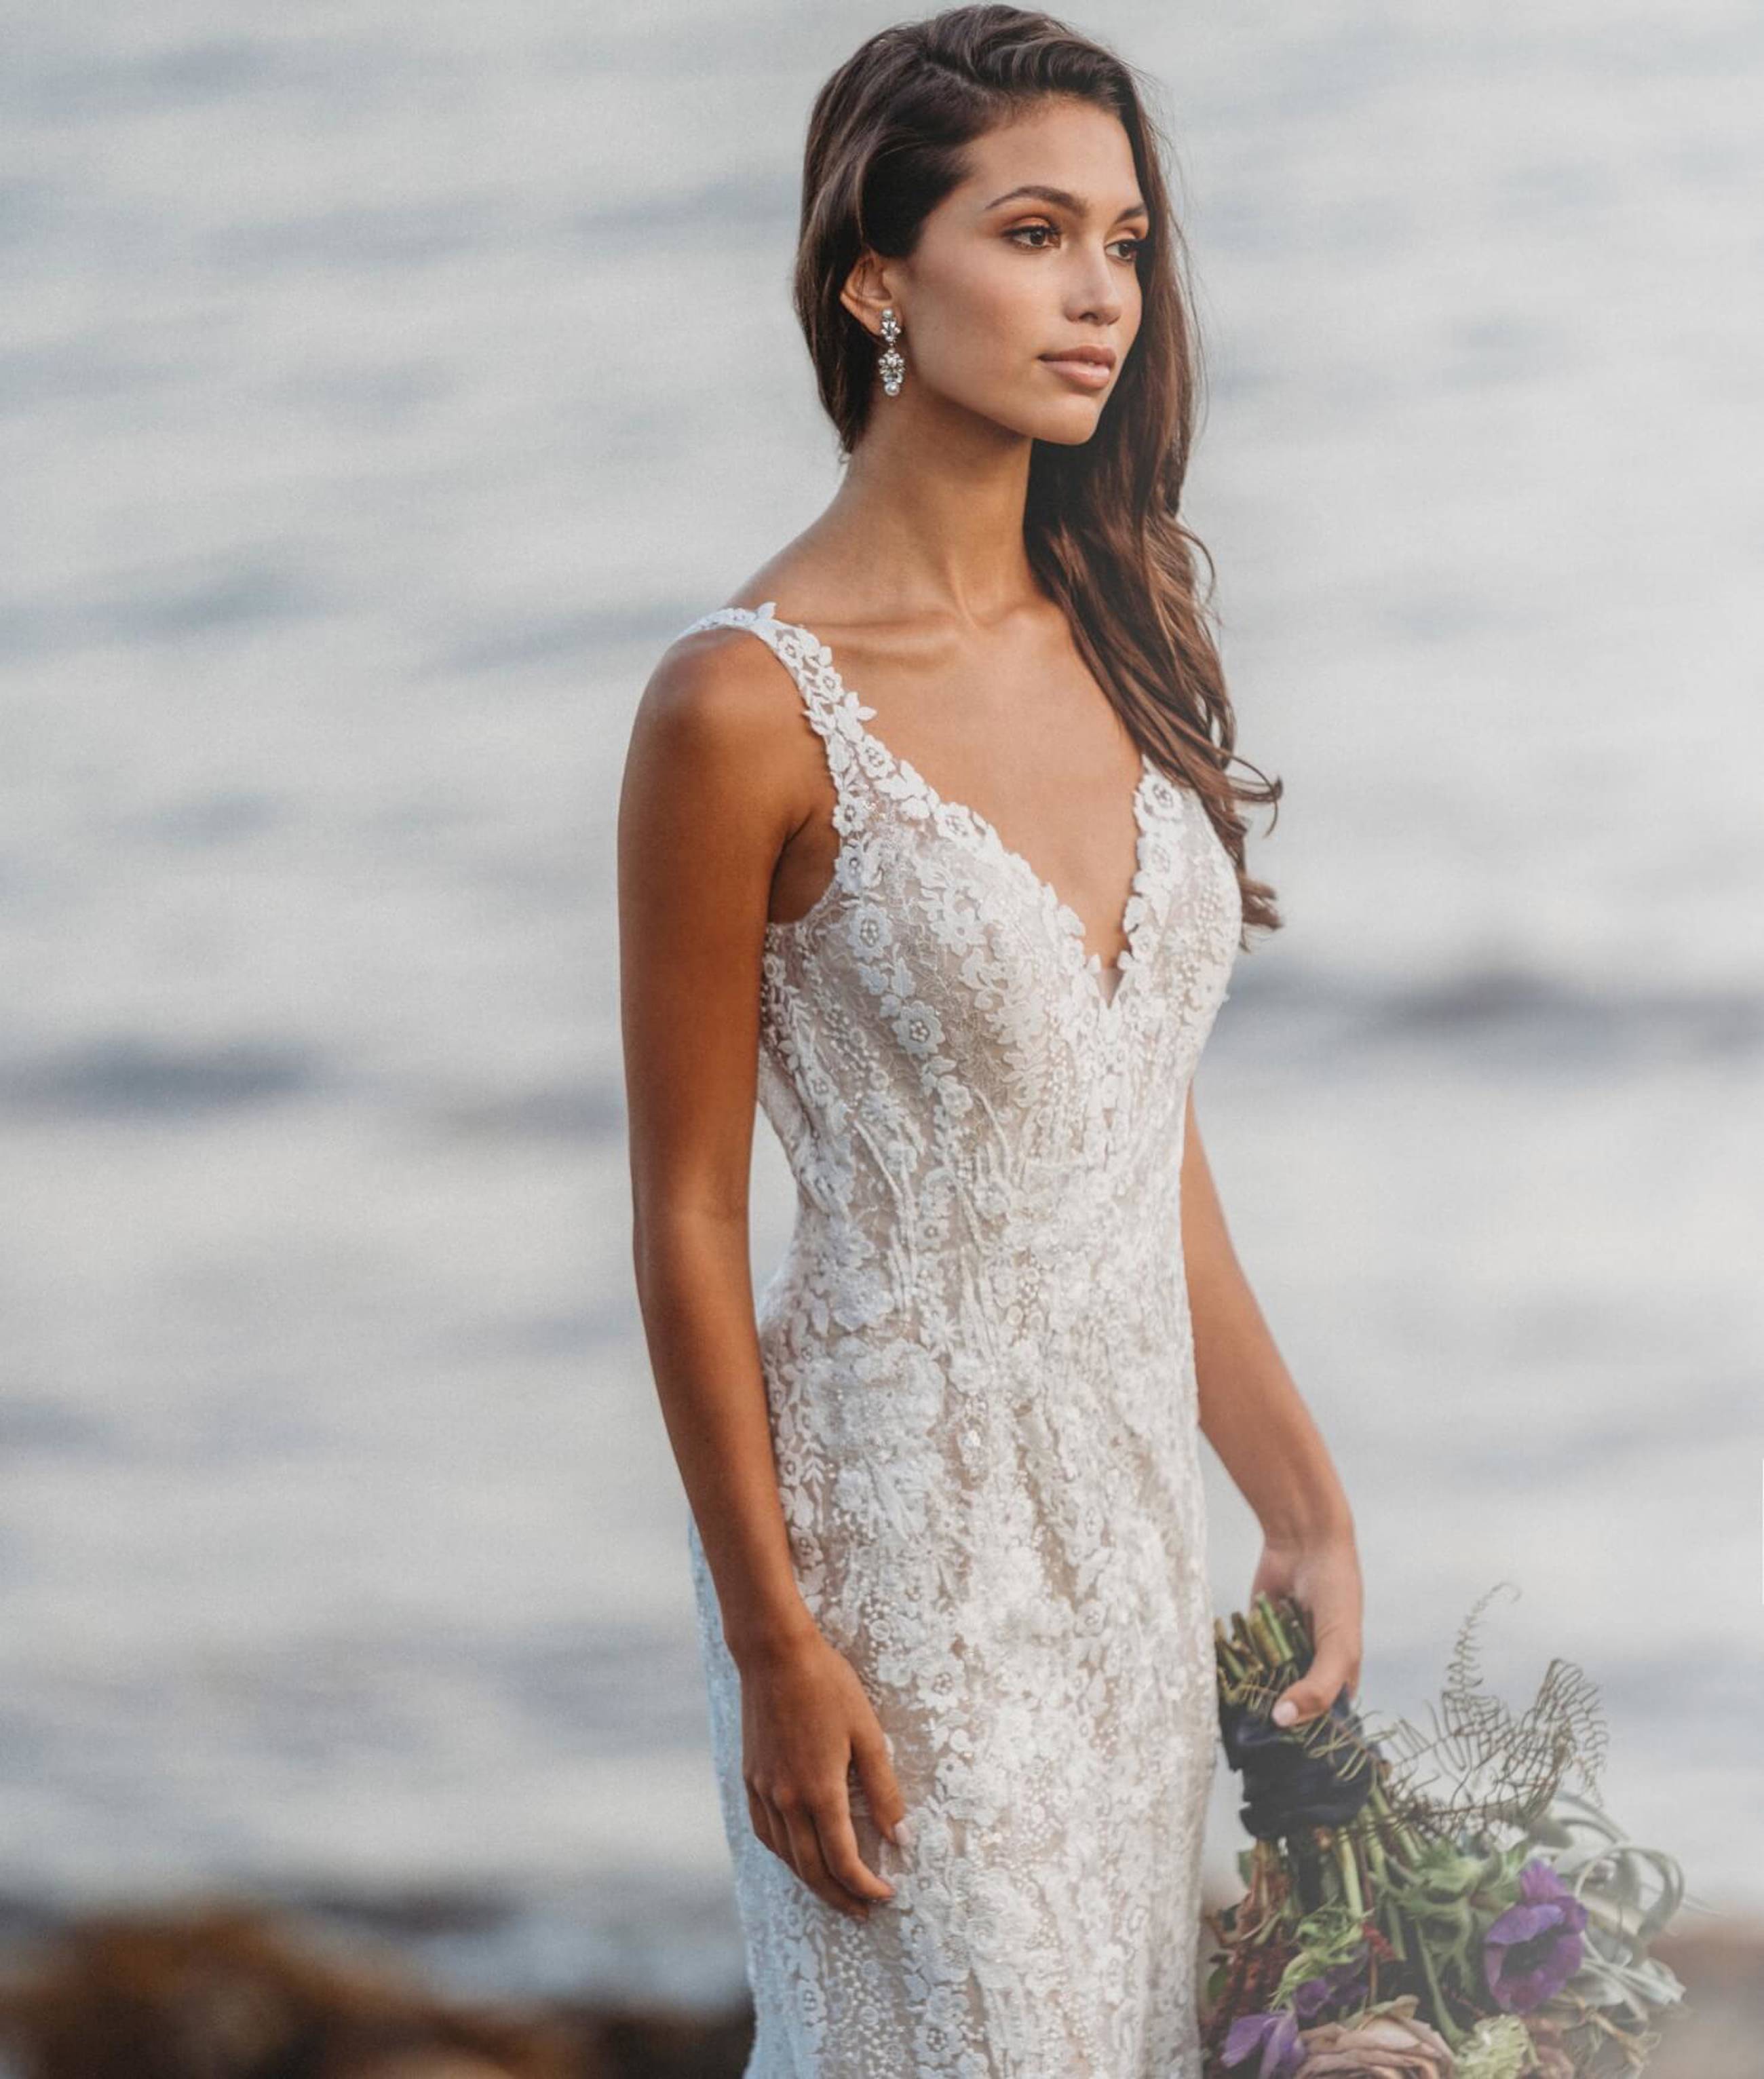 Model wearing white Allure Bridalwear dress